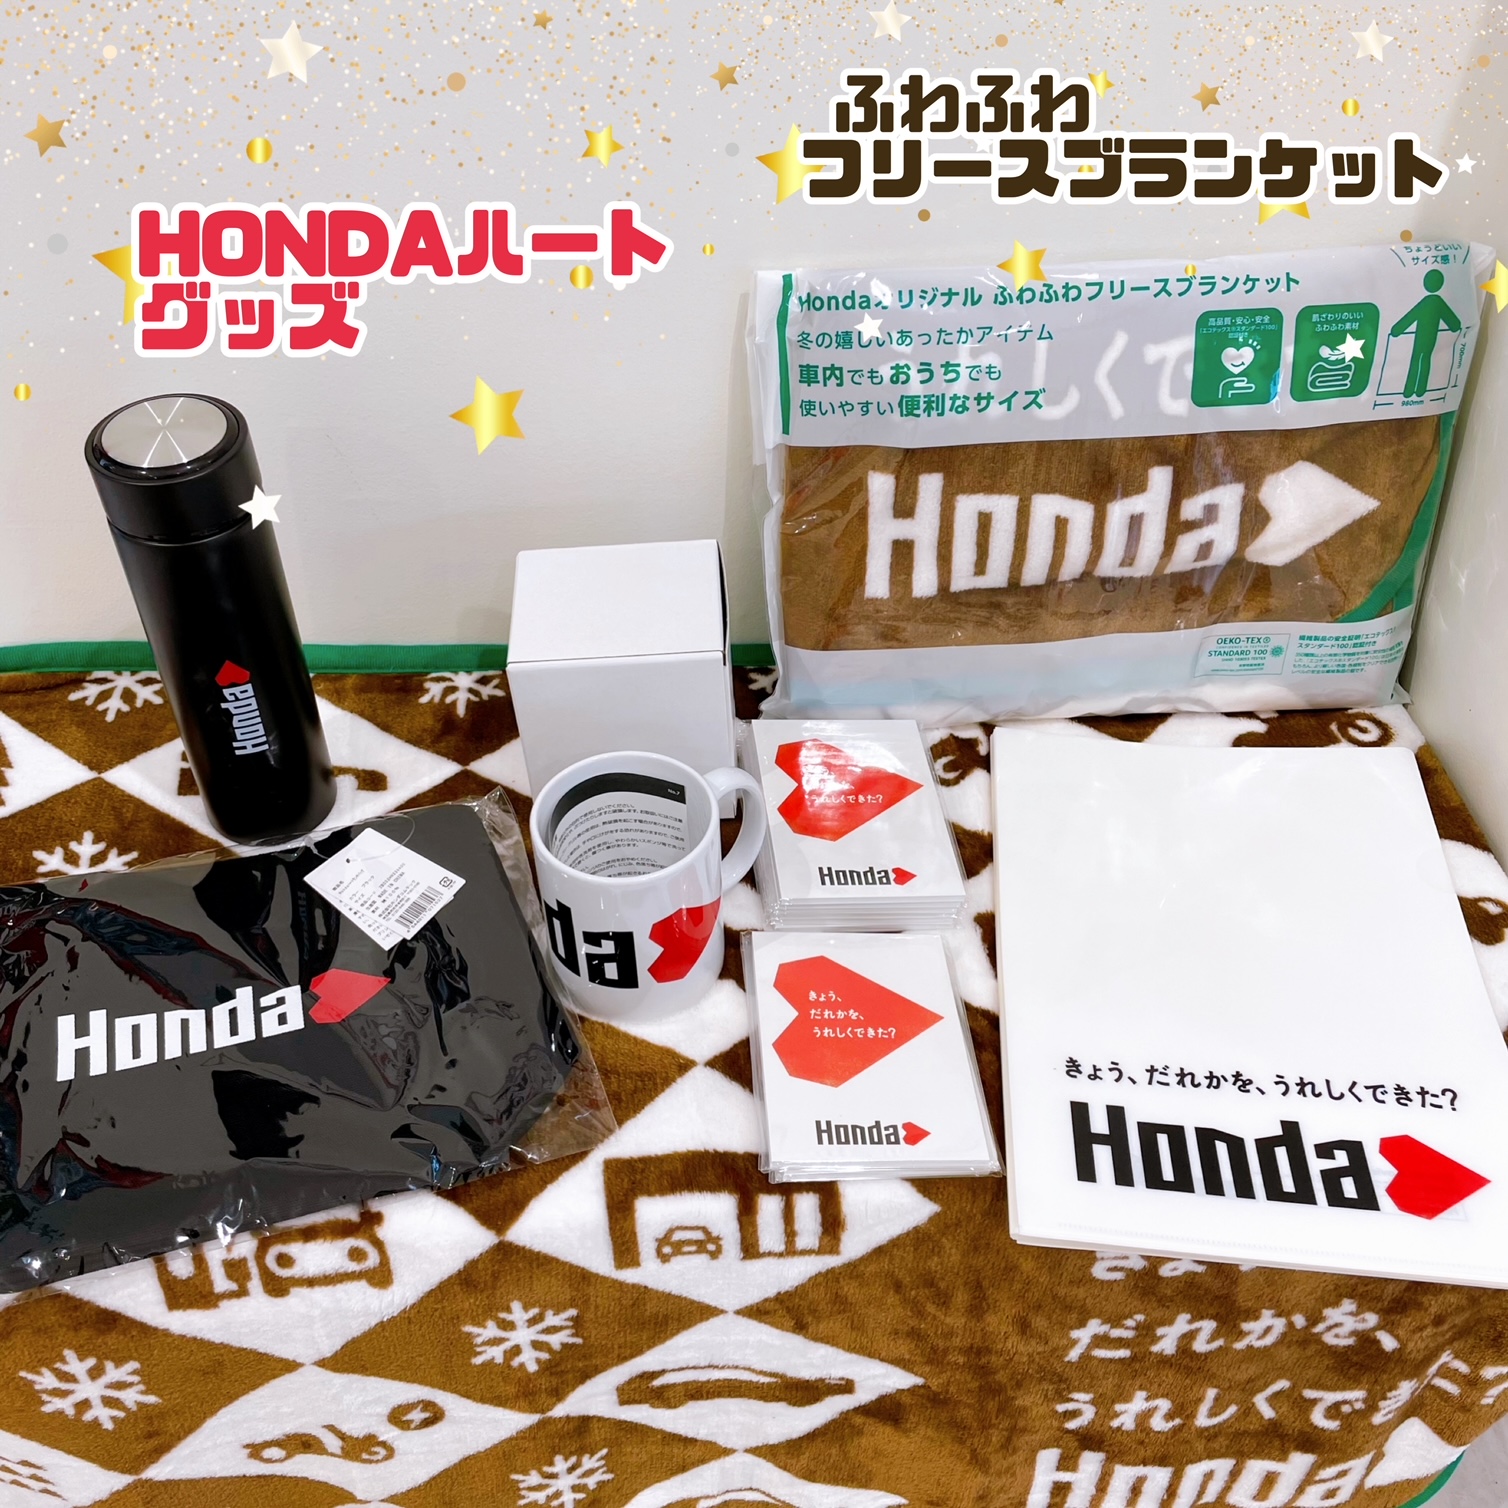 Honda.hart